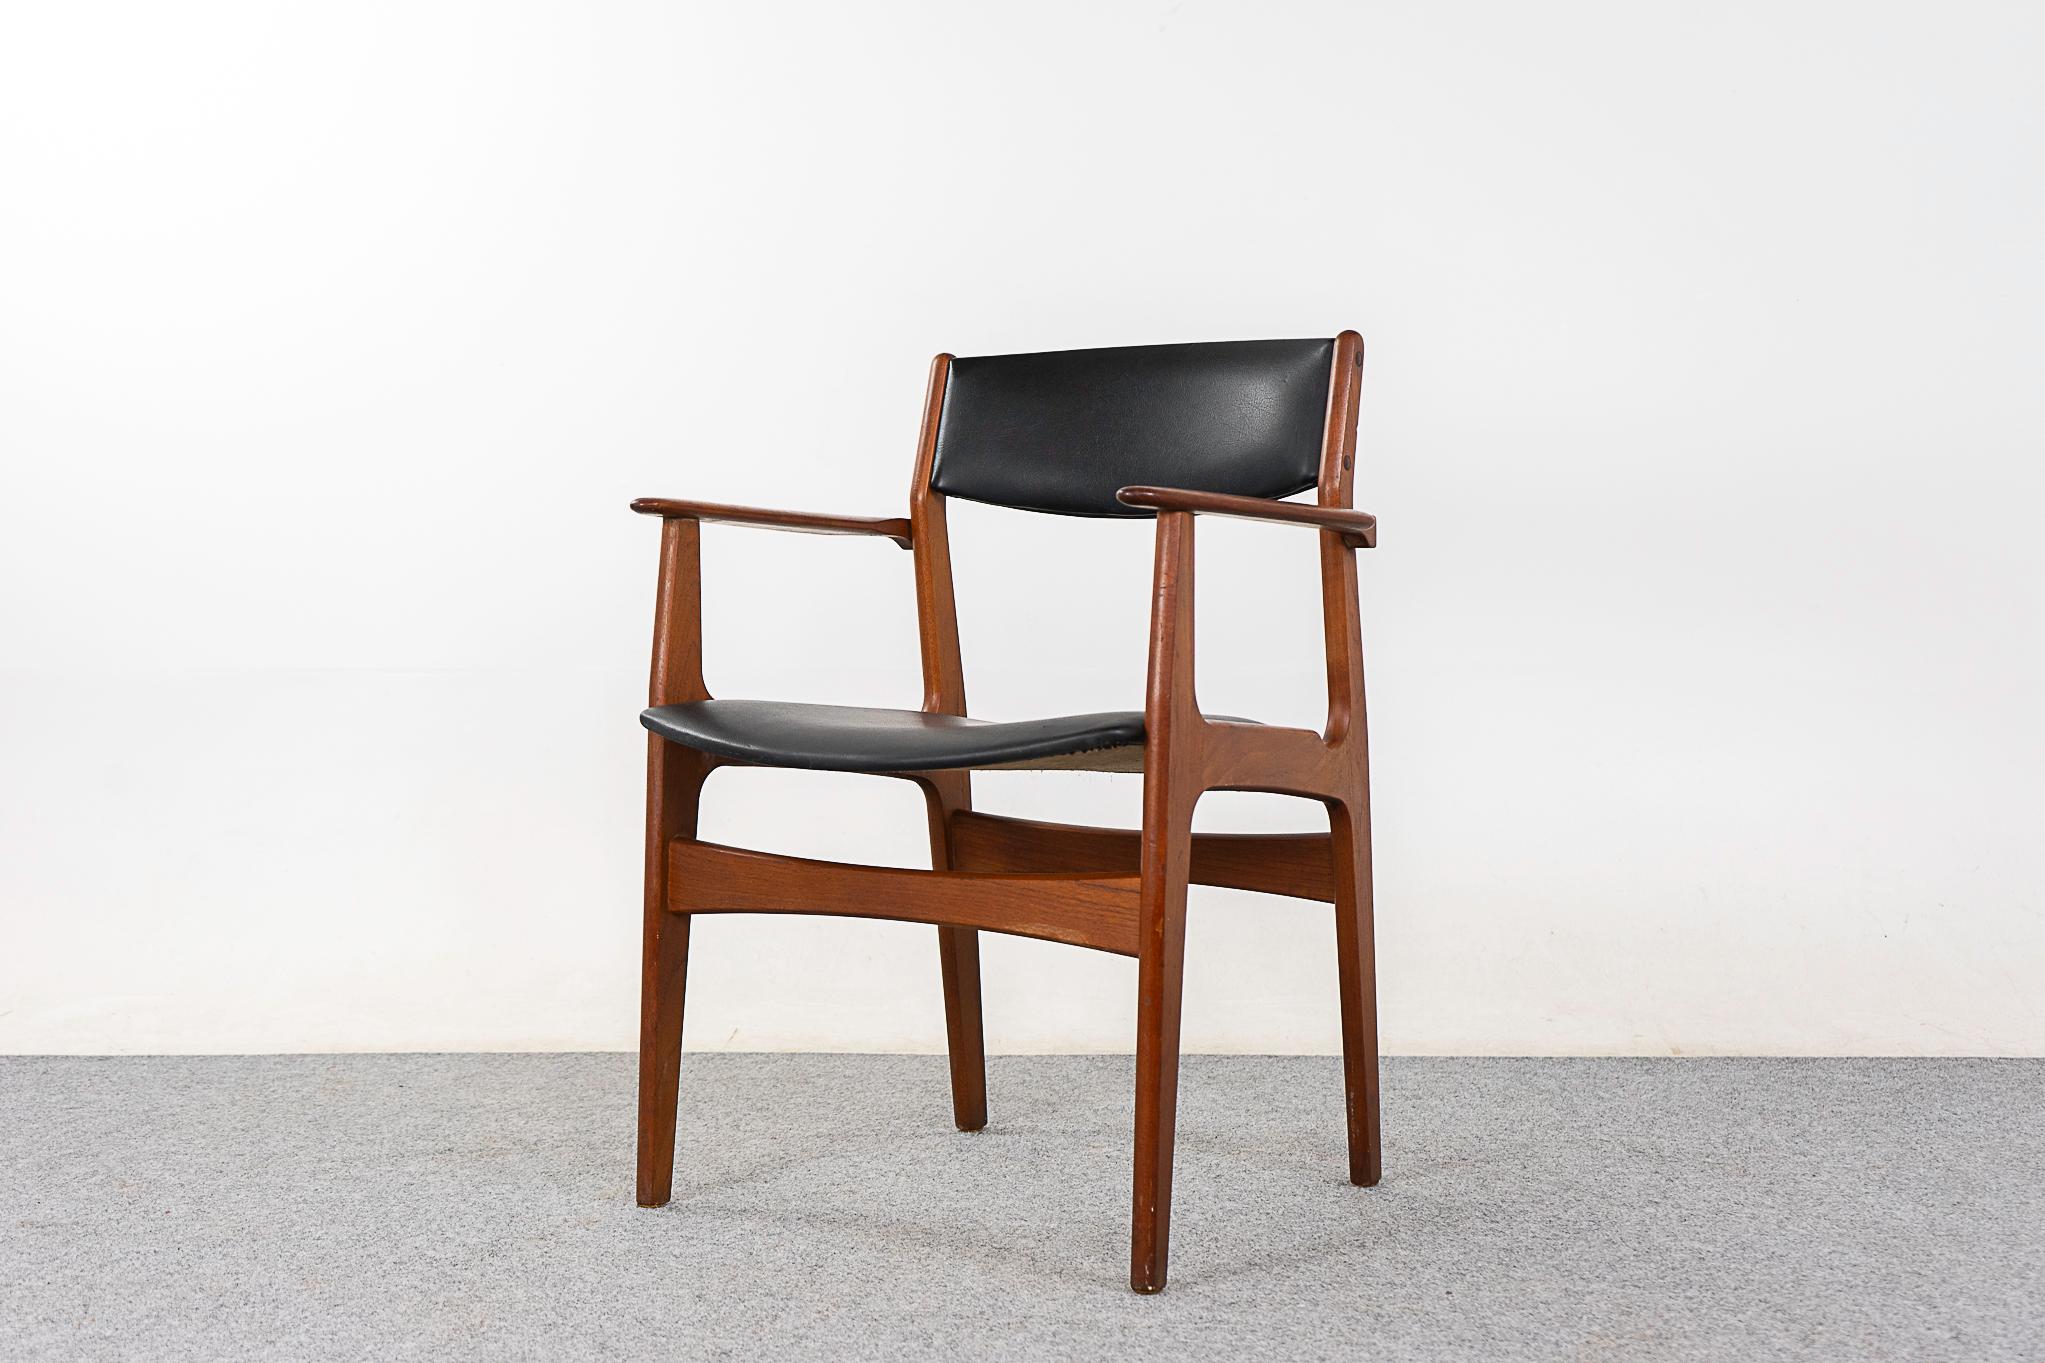 Dänischer Sessel aus Teakholz, ca. 1960er Jahre. Stabiler Rahmen mit Bowtie-Querstreben und schönen Winkeln. Schwarze Original-Vinylpolsterung mit geringen Gebrauchsspuren.

Unrestauriertes Exemplar mit der Option, es in restauriertem Zustand für